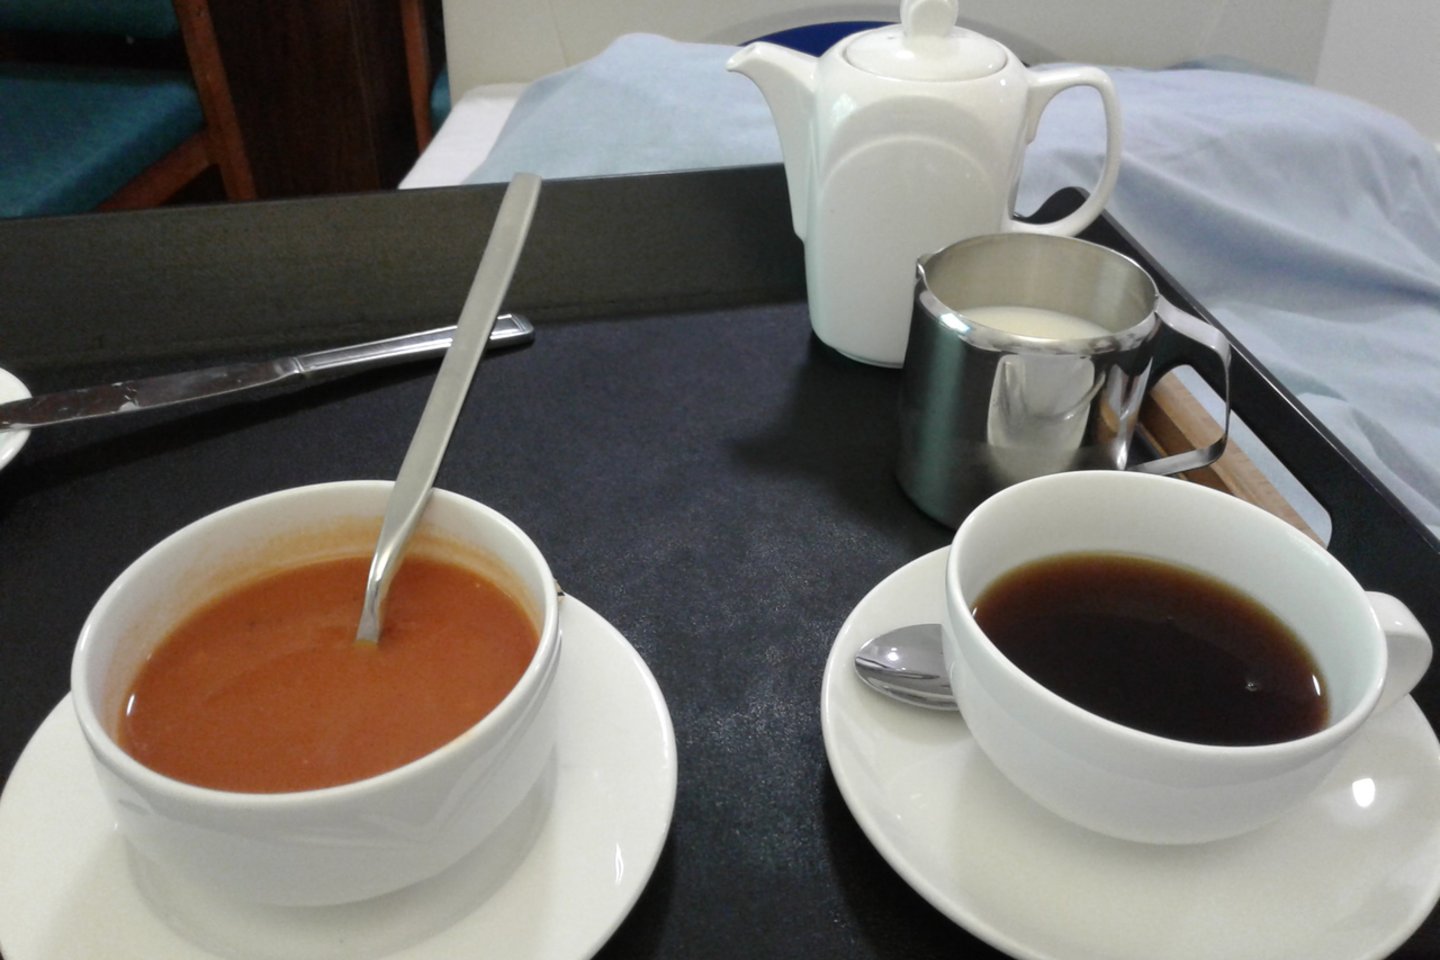   Pietūs: sriuba ir kava. <br> Skaitytojo nuotr.